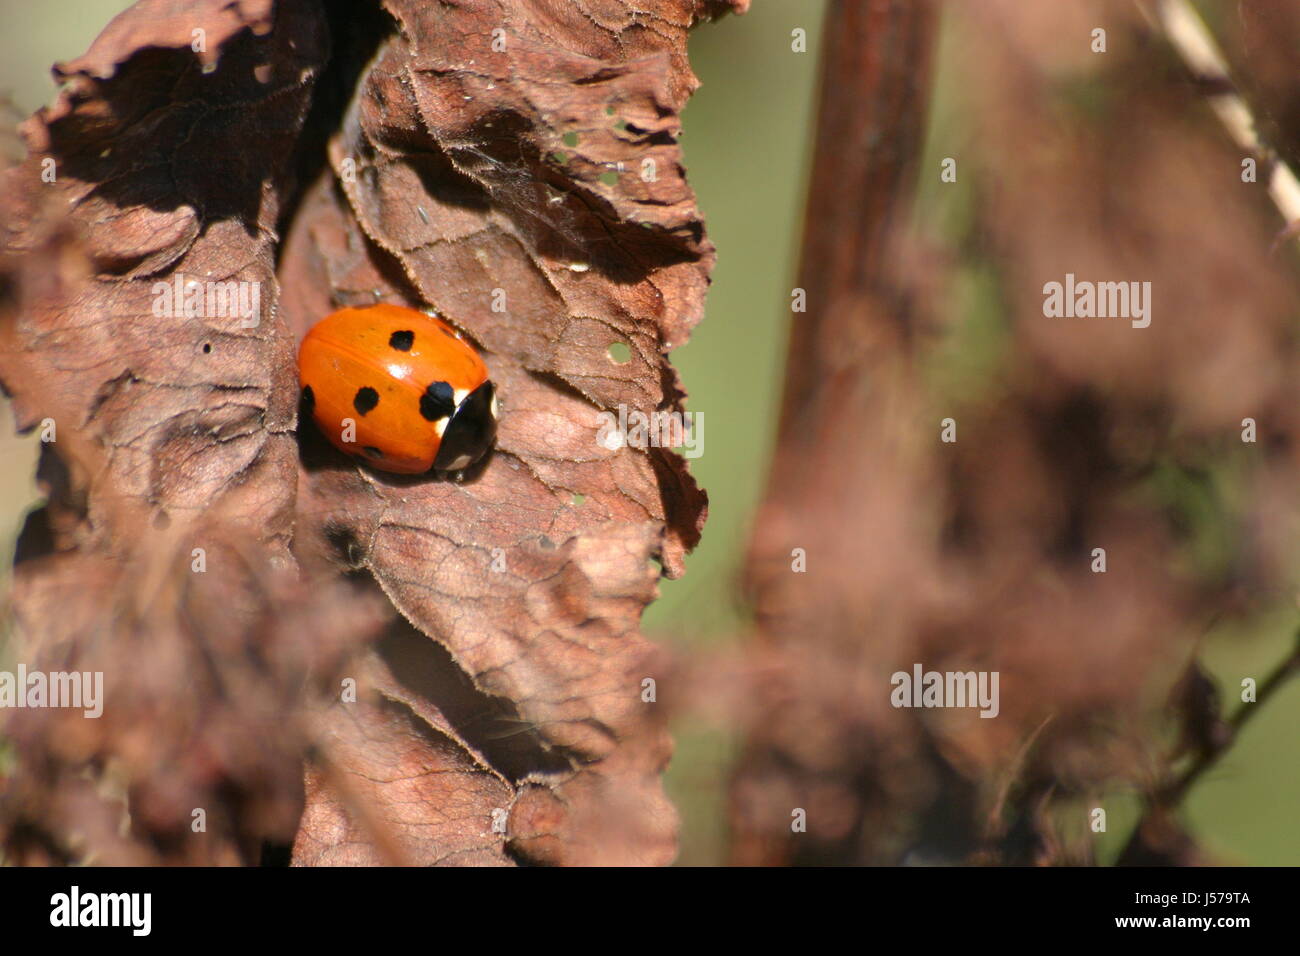 insect beetle ladybug siebenpunkt marienkfer siebenpunkt kerbtier coccinella Stock Photo